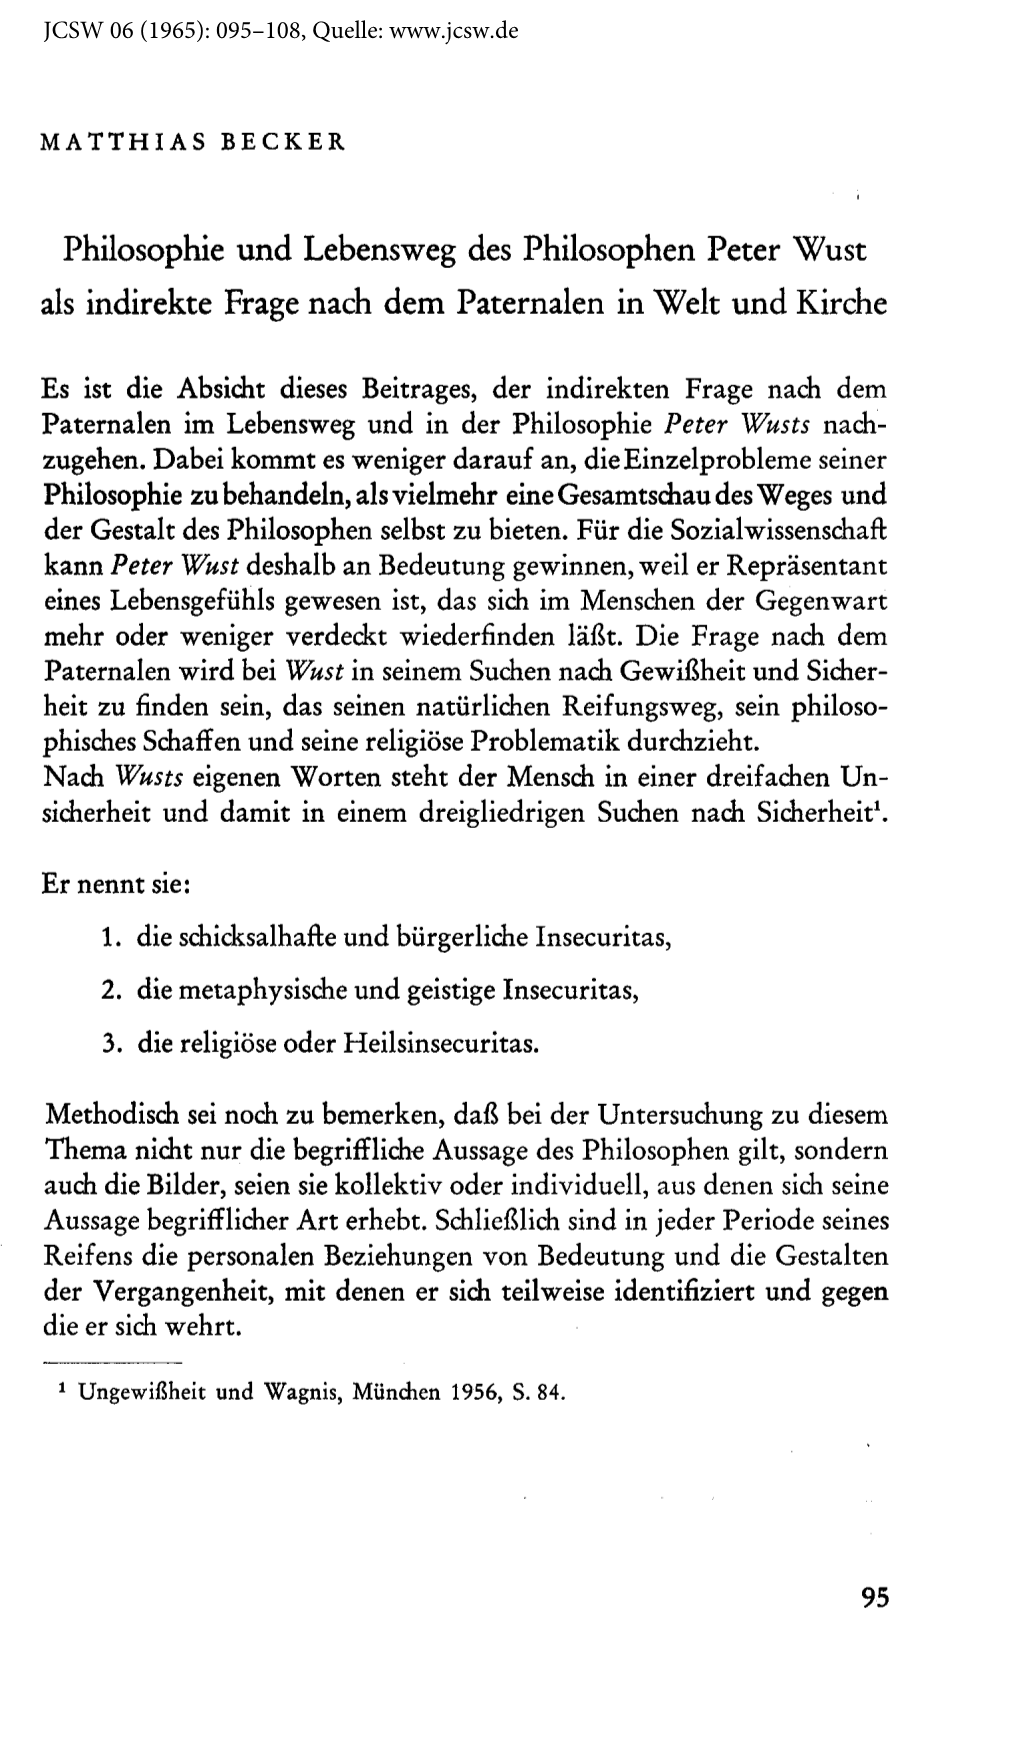 Philosophie Und Lebensweg Des Philosophen Peter Wust Als Indirekte Frage Nach Dem Paternalen in Welt Und Kirche